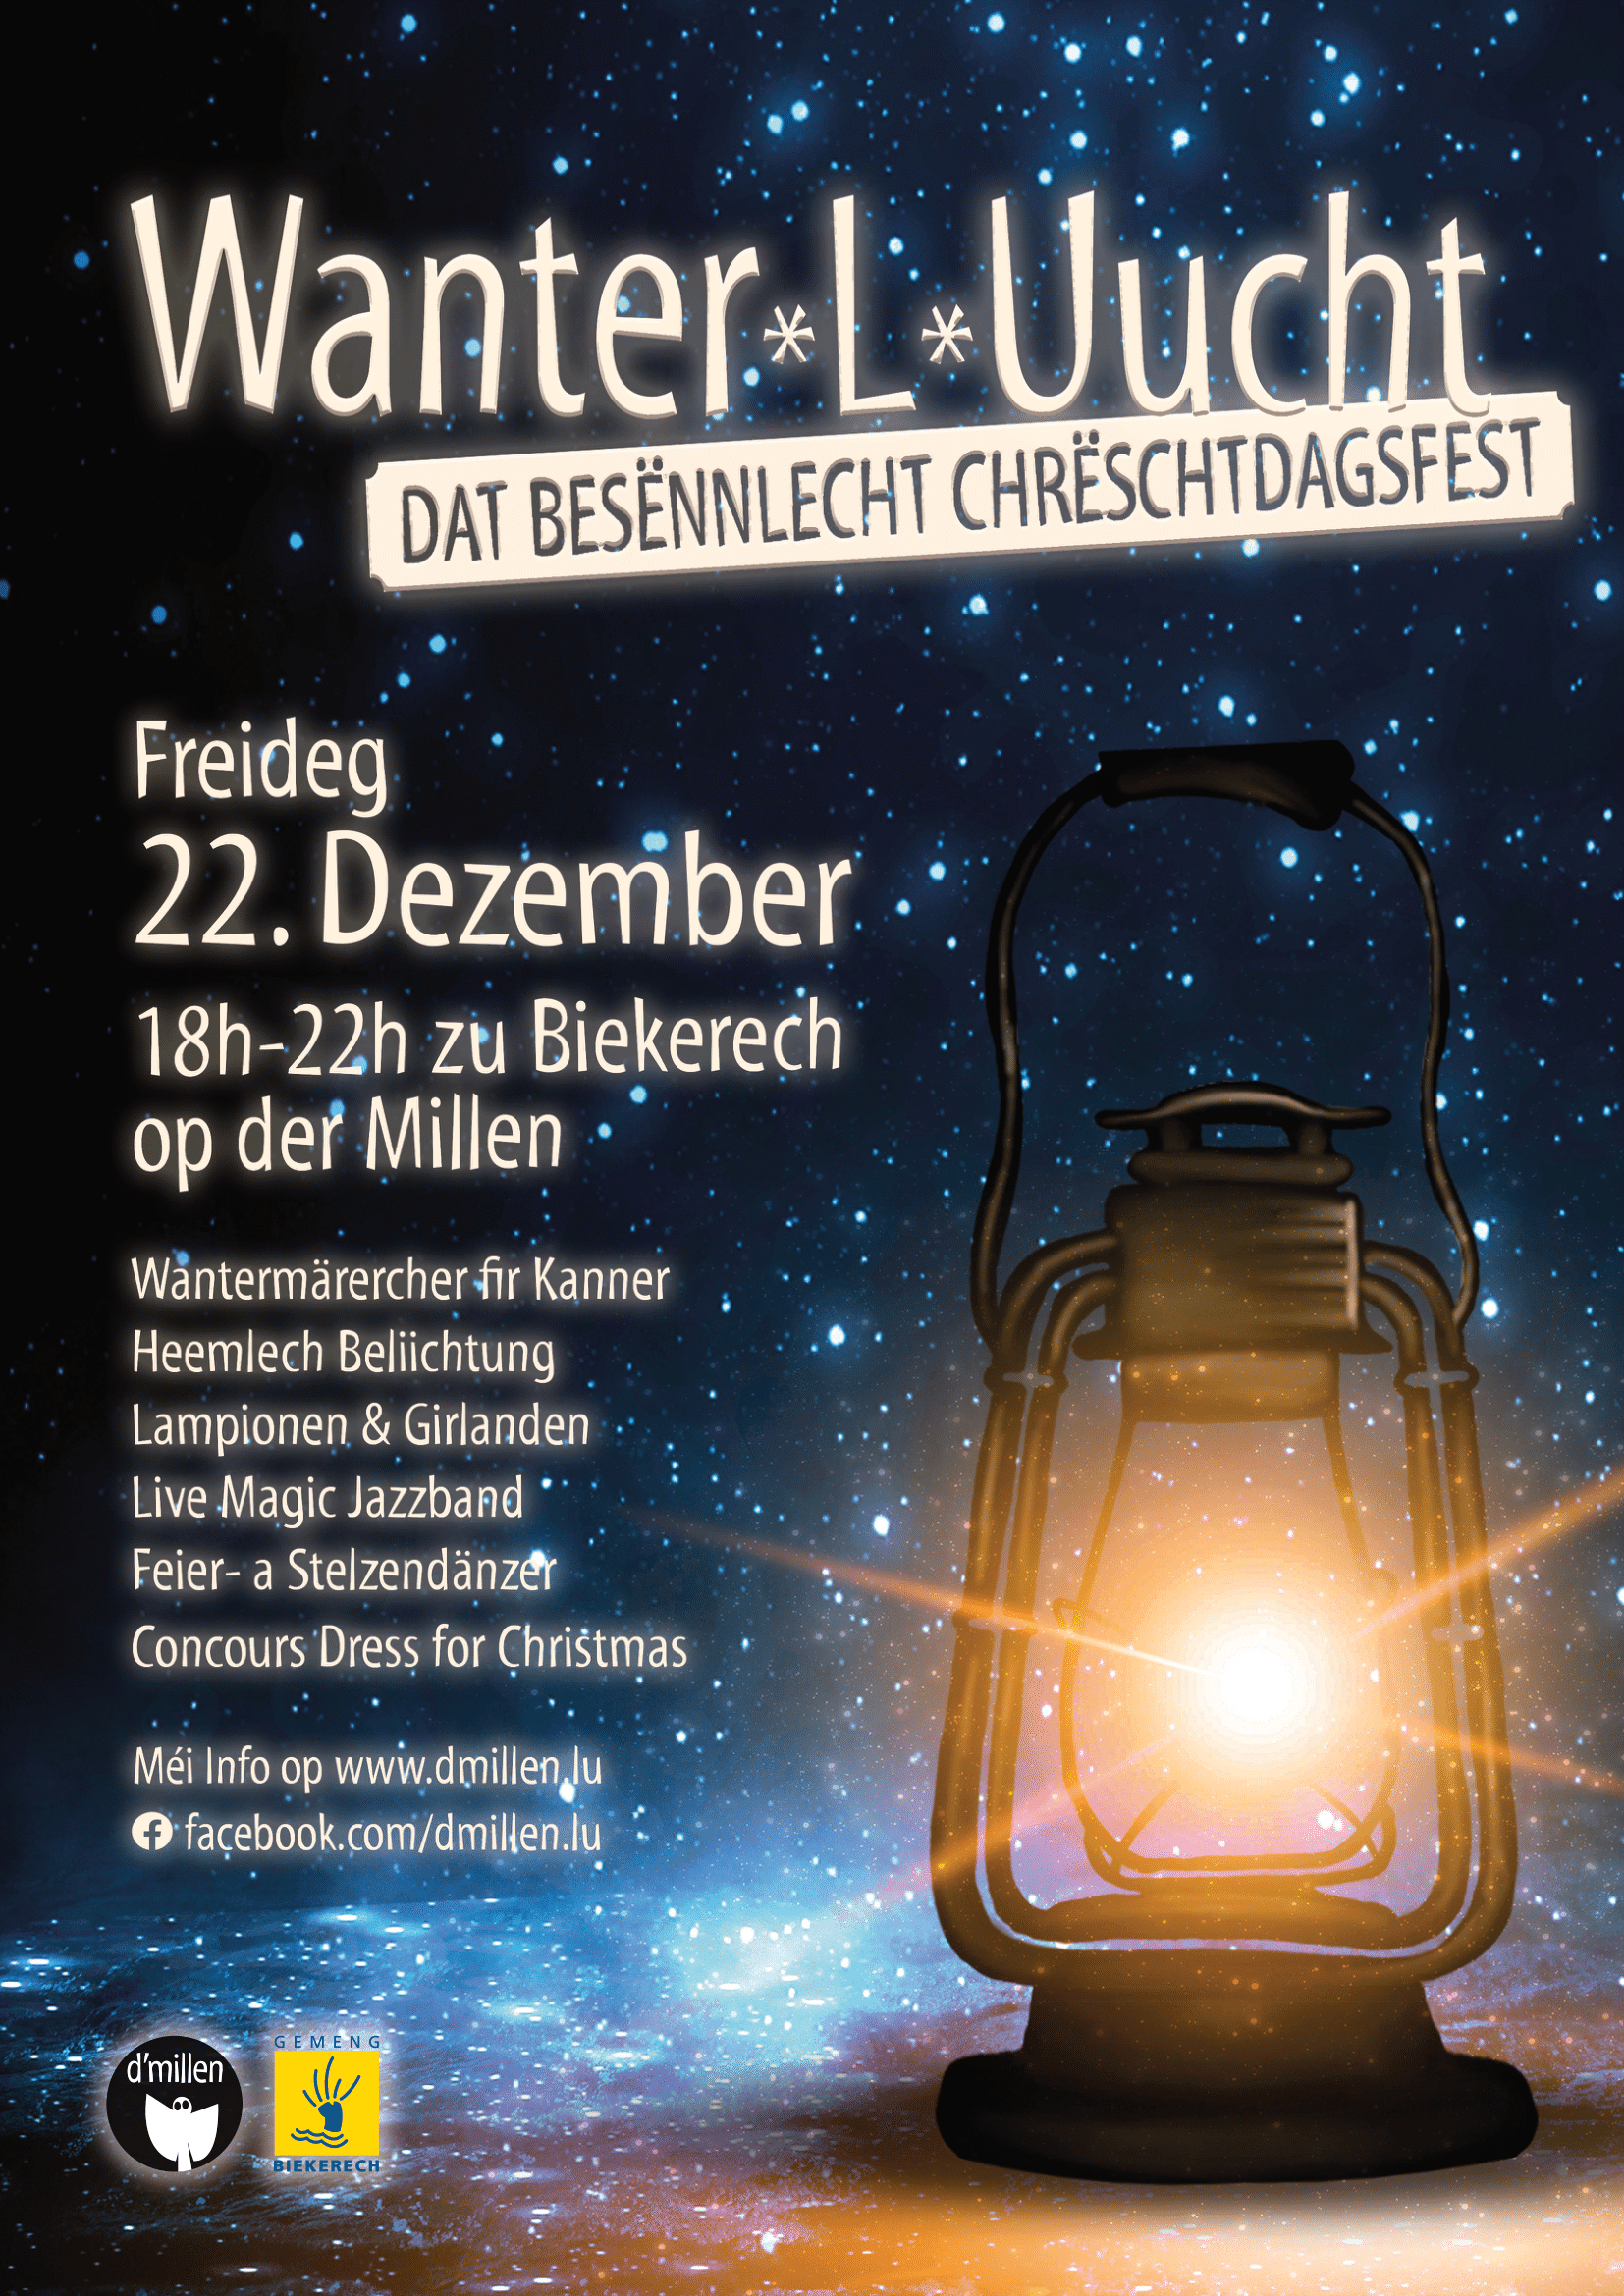 Winter-L-Ucht - la fête de Noël significative à Biekerech sur le moulin !